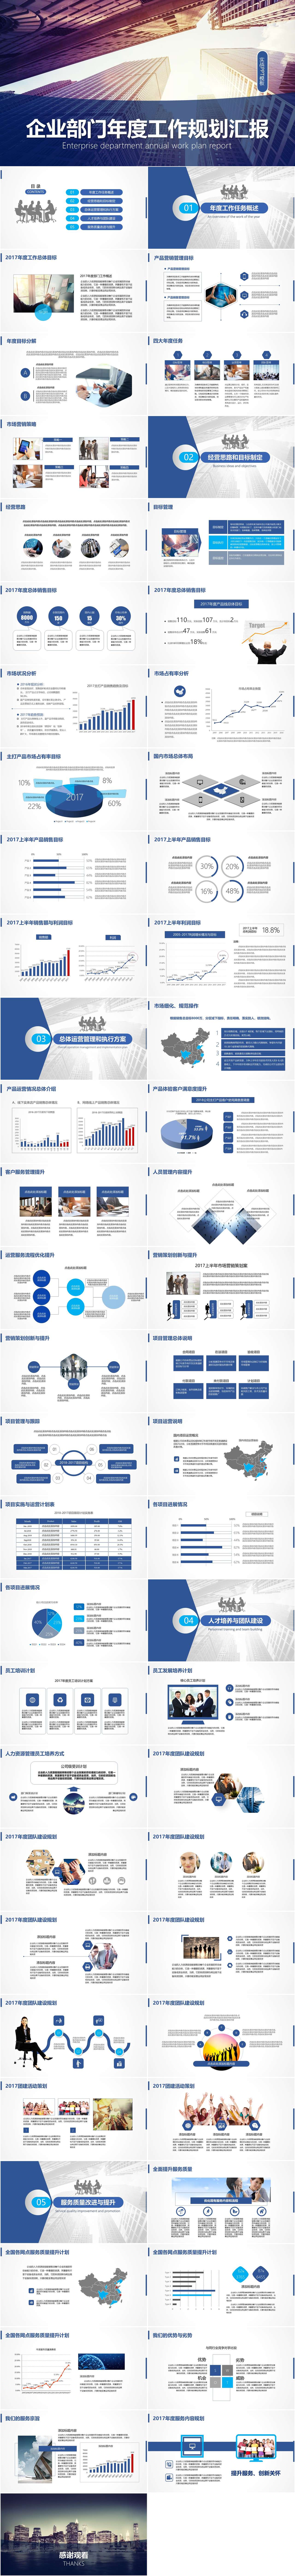 蓝色商务风企业部门年度工作规划PPT模板